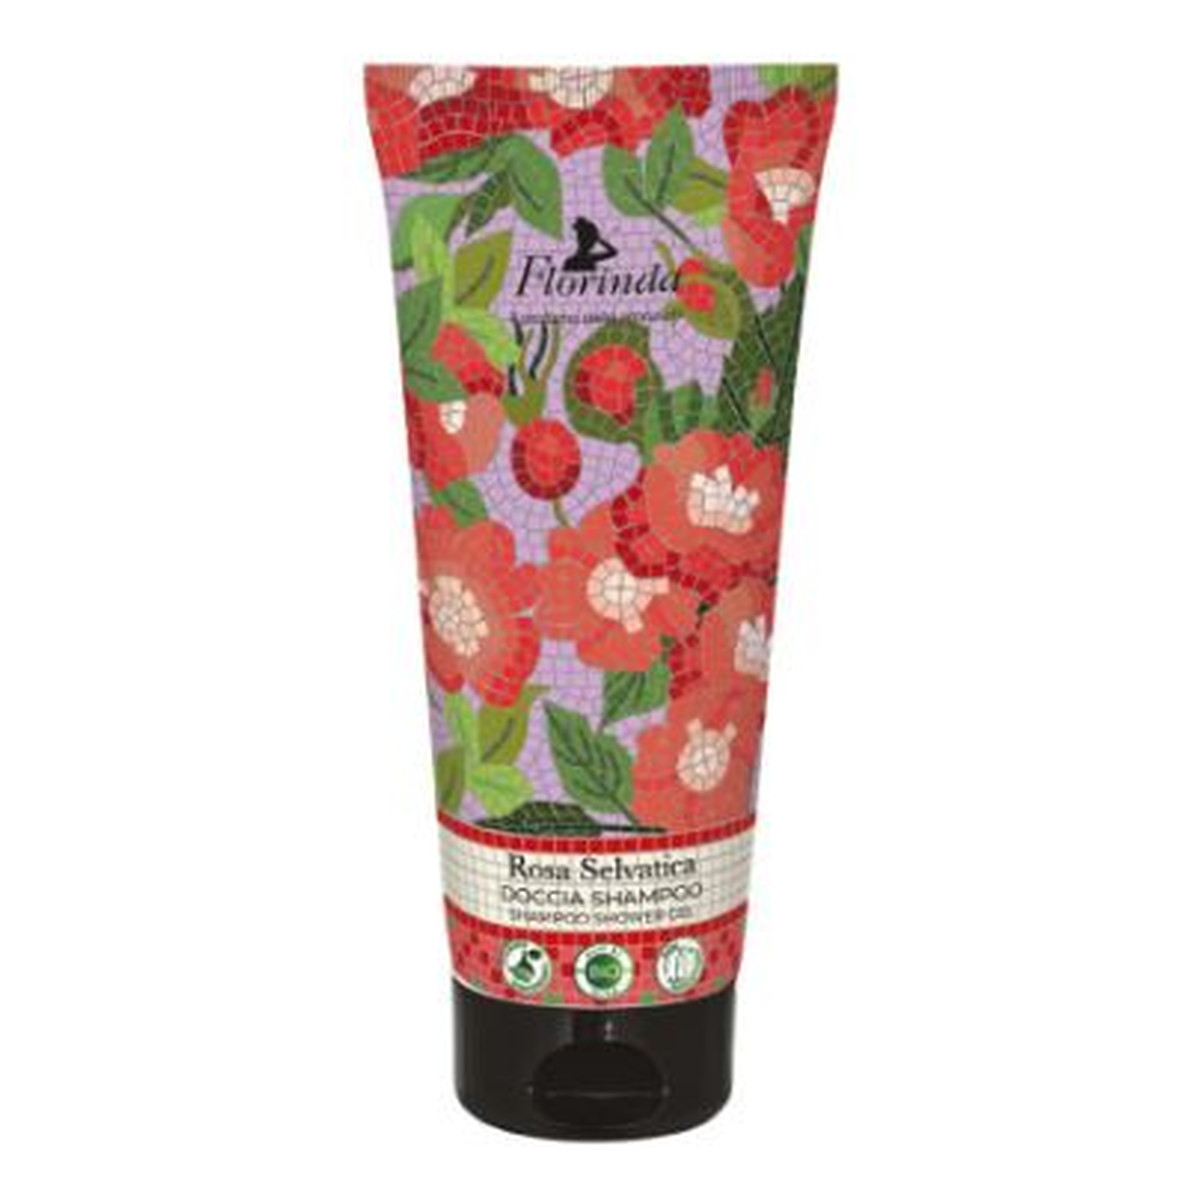 Florinda szampon-żel pod prysznic dzika róża 200ml